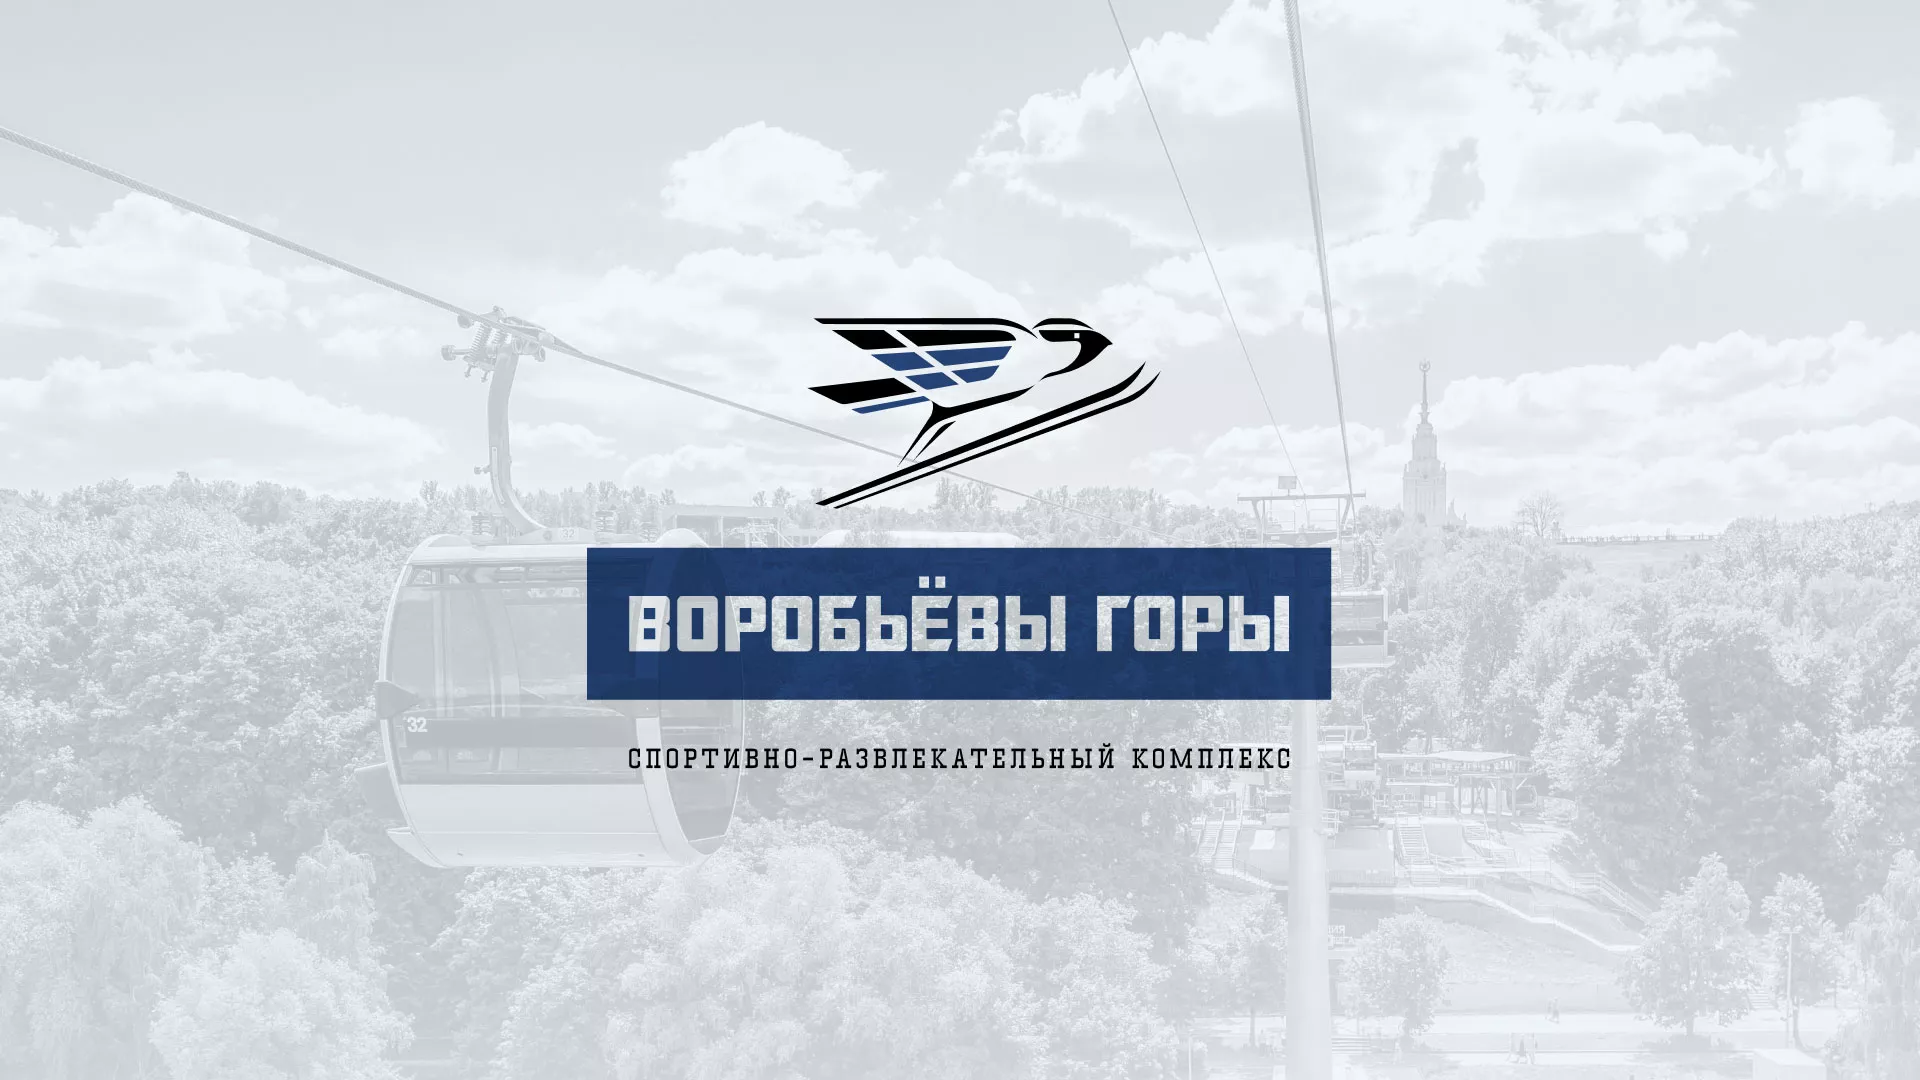 Разработка сайта в Льгове для спортивно-развлекательного комплекса «Воробьёвы горы»